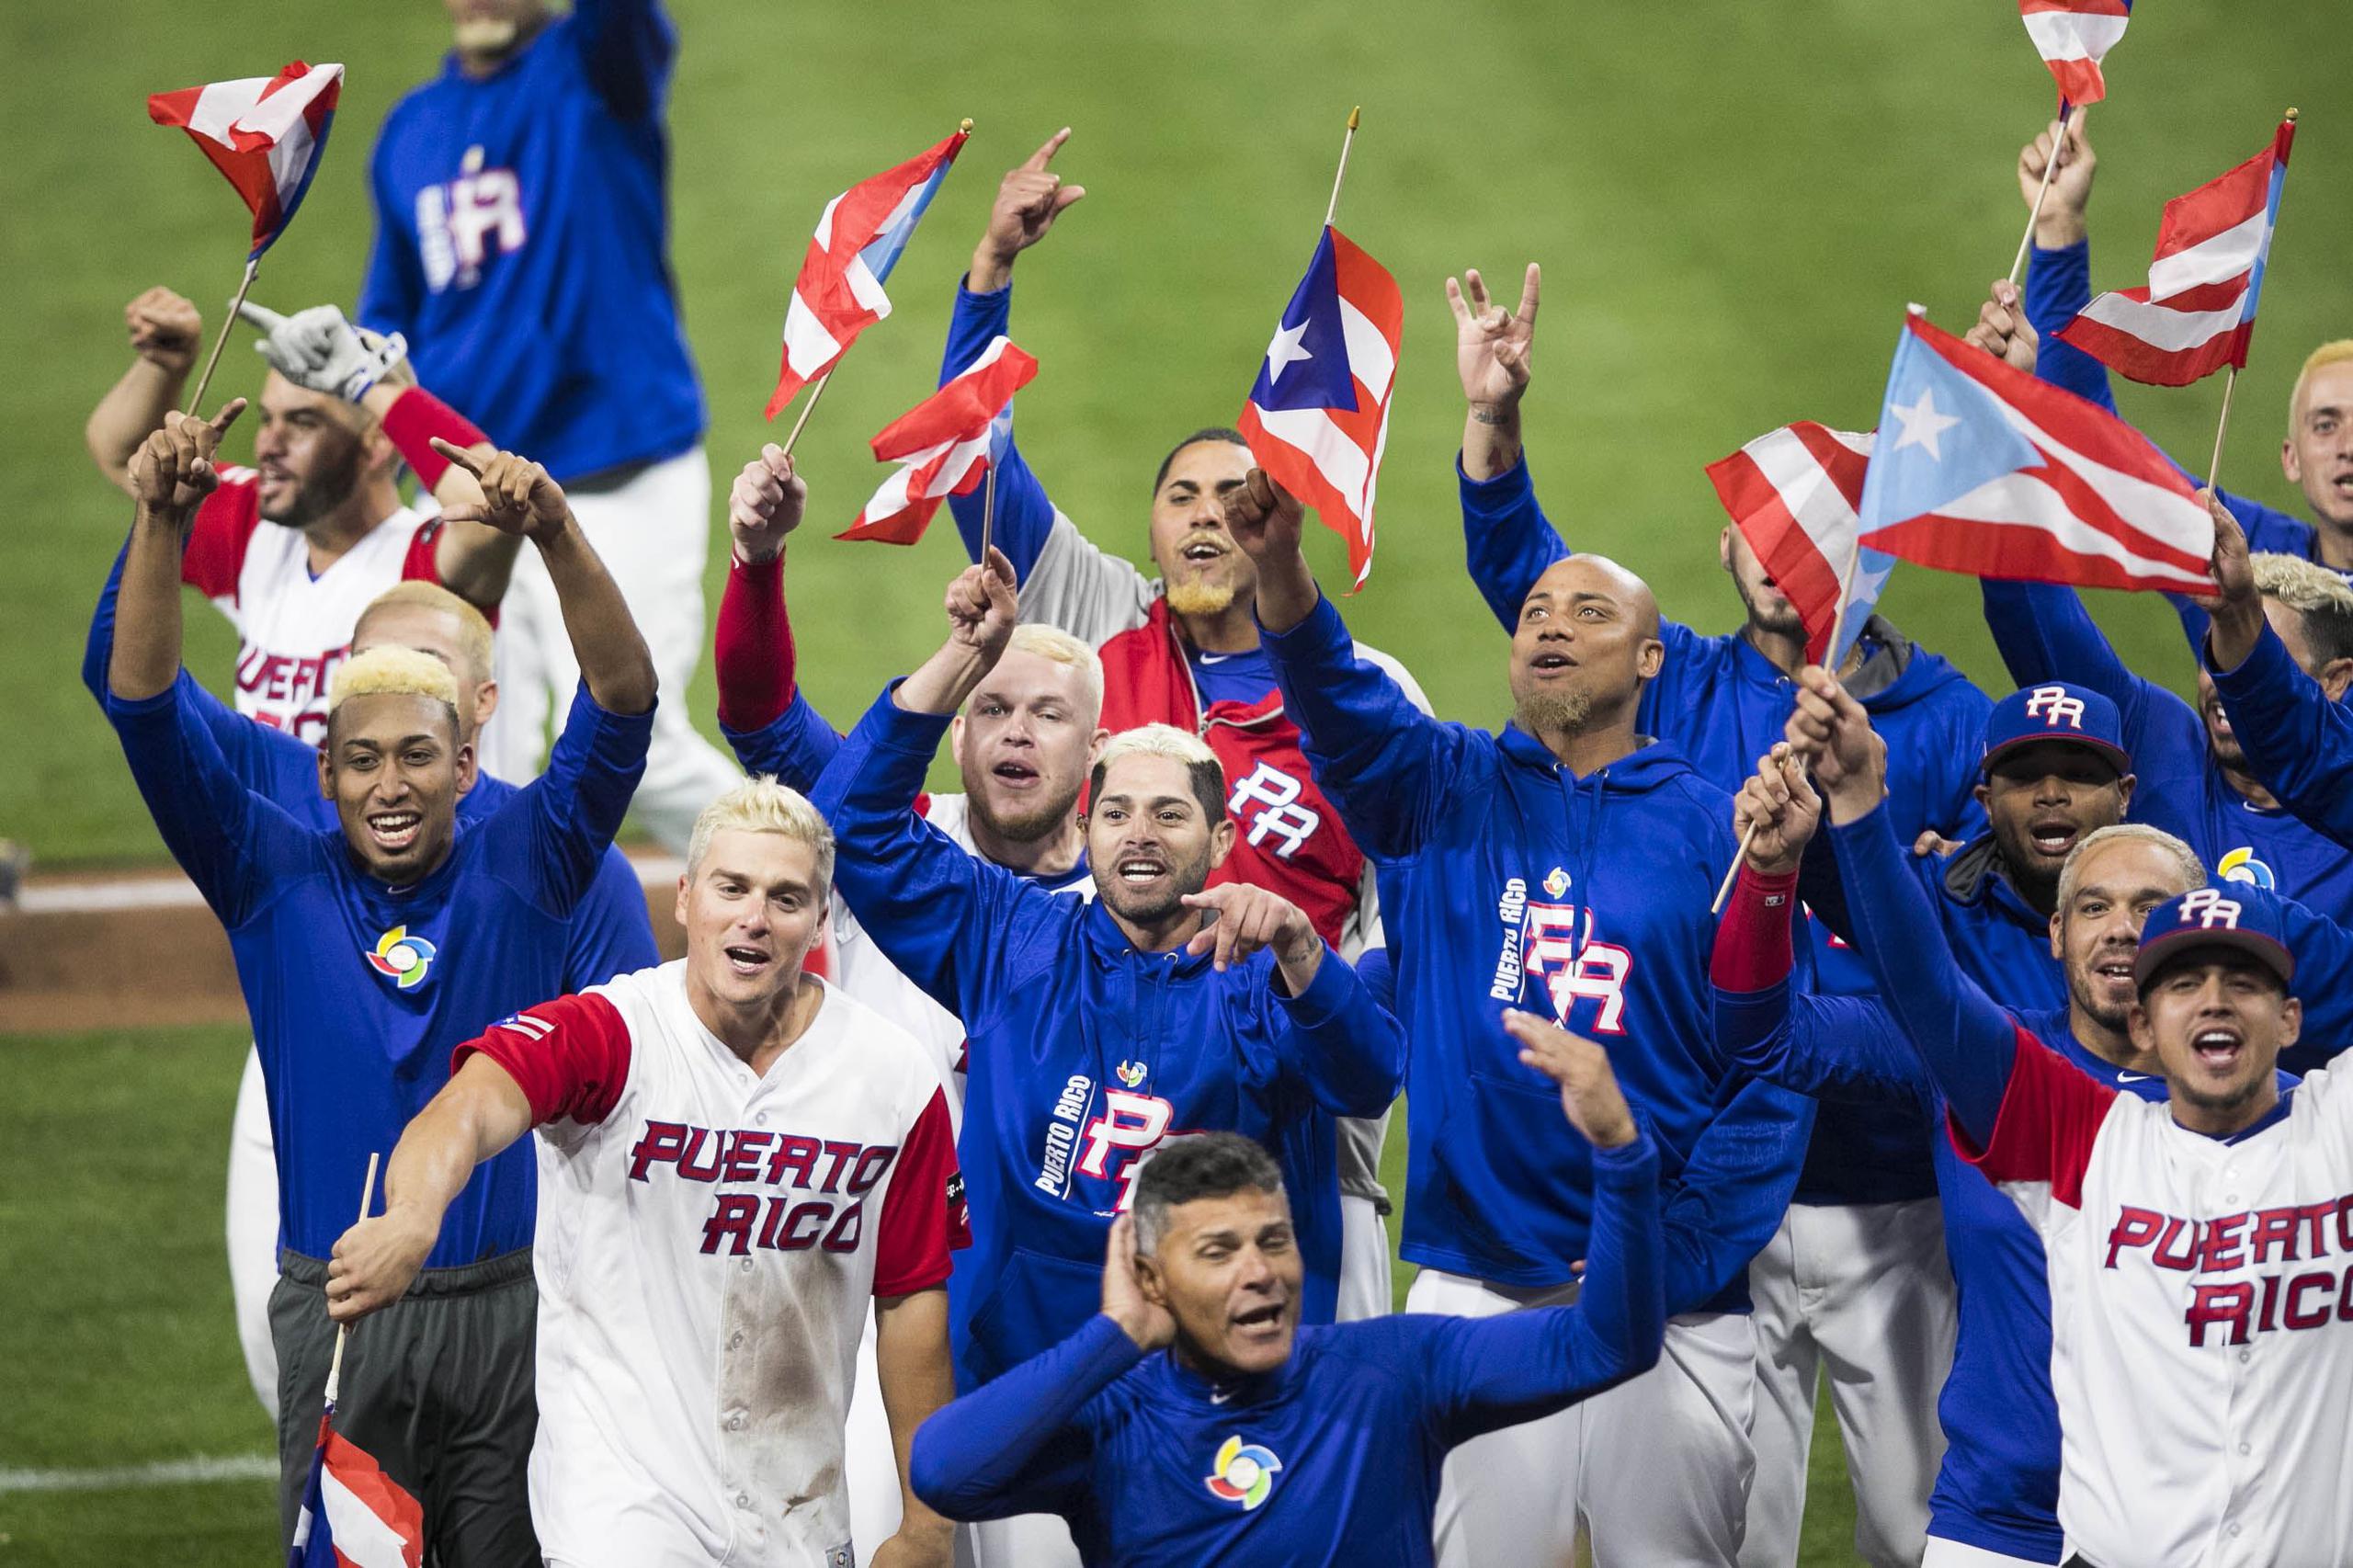 Puerto Rico, invicto en cinco salidas, saldrá esta tarde a jugar un partido de trámite ante la eliminada representación de Venezuela a las 3:30 p.m.